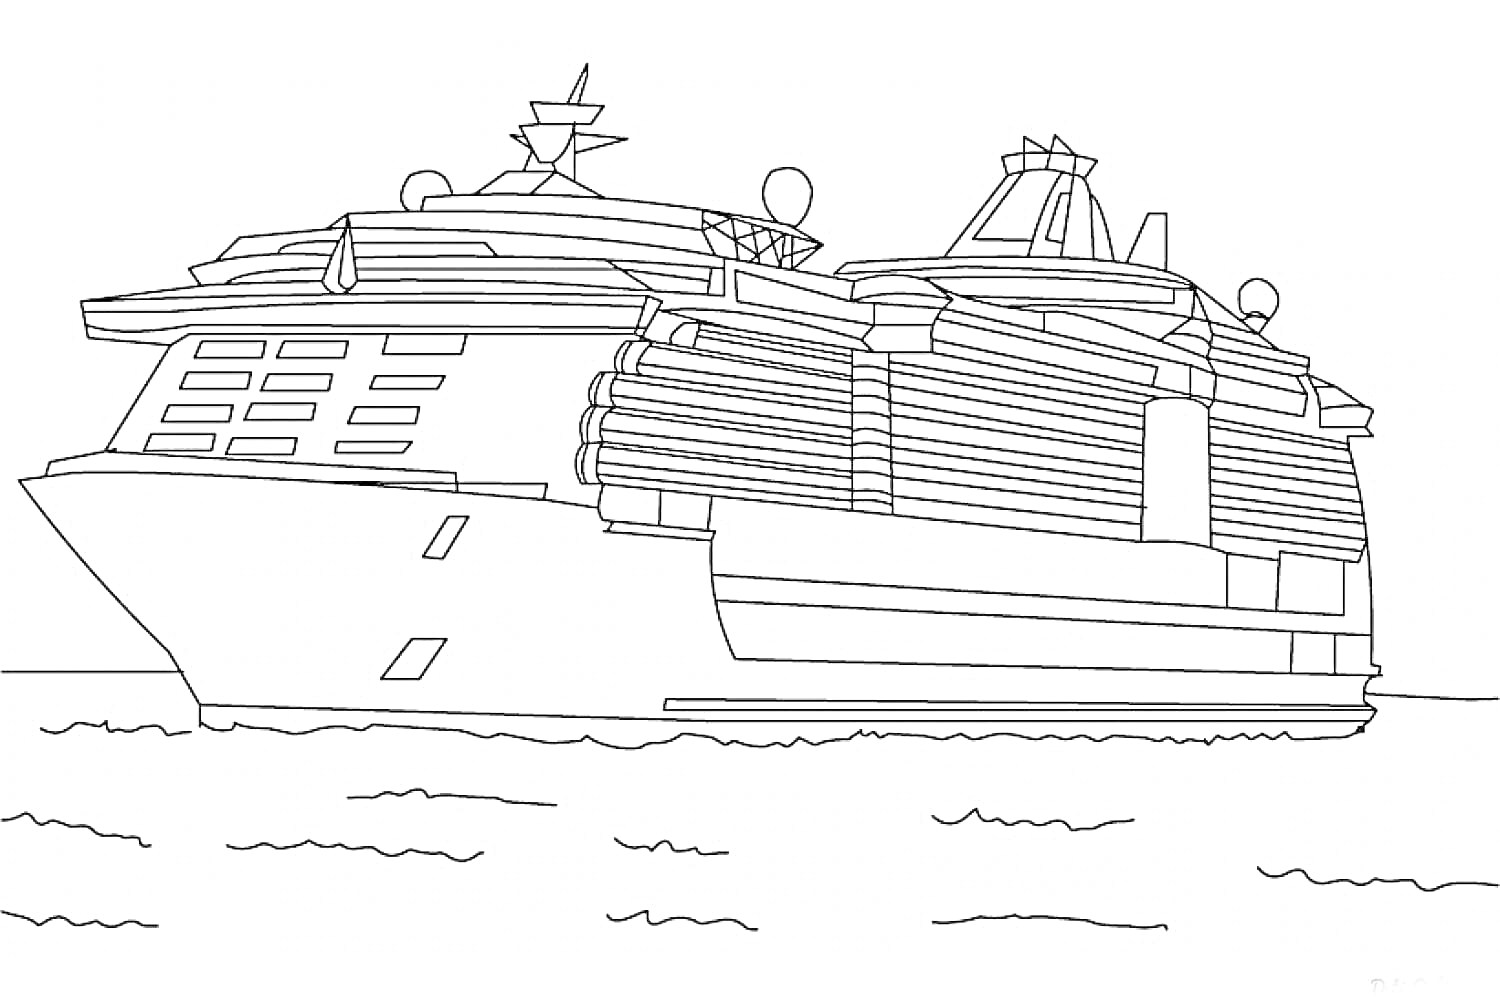 Раскраска Пассажирский круизный лайнер на море с антеннами и деталями палуб